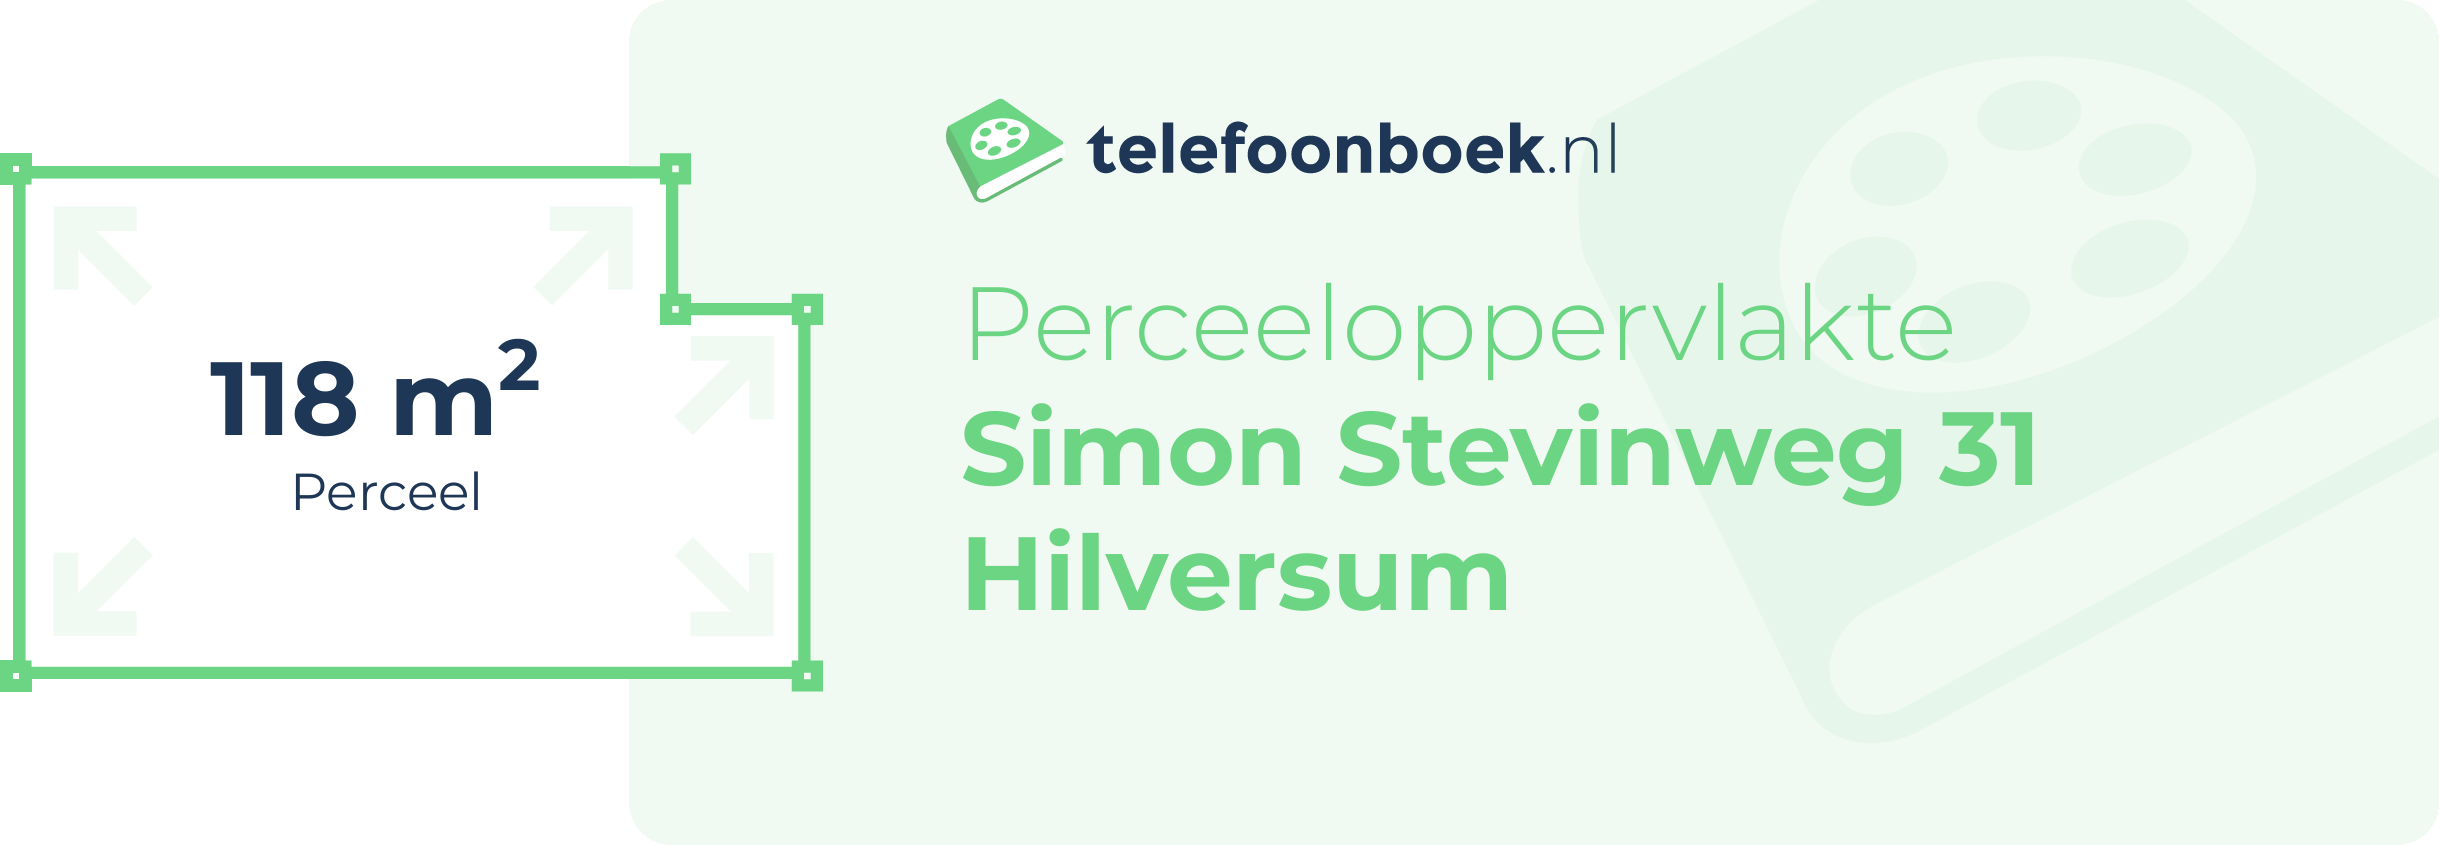 Perceeloppervlakte Simon Stevinweg 31 Hilversum